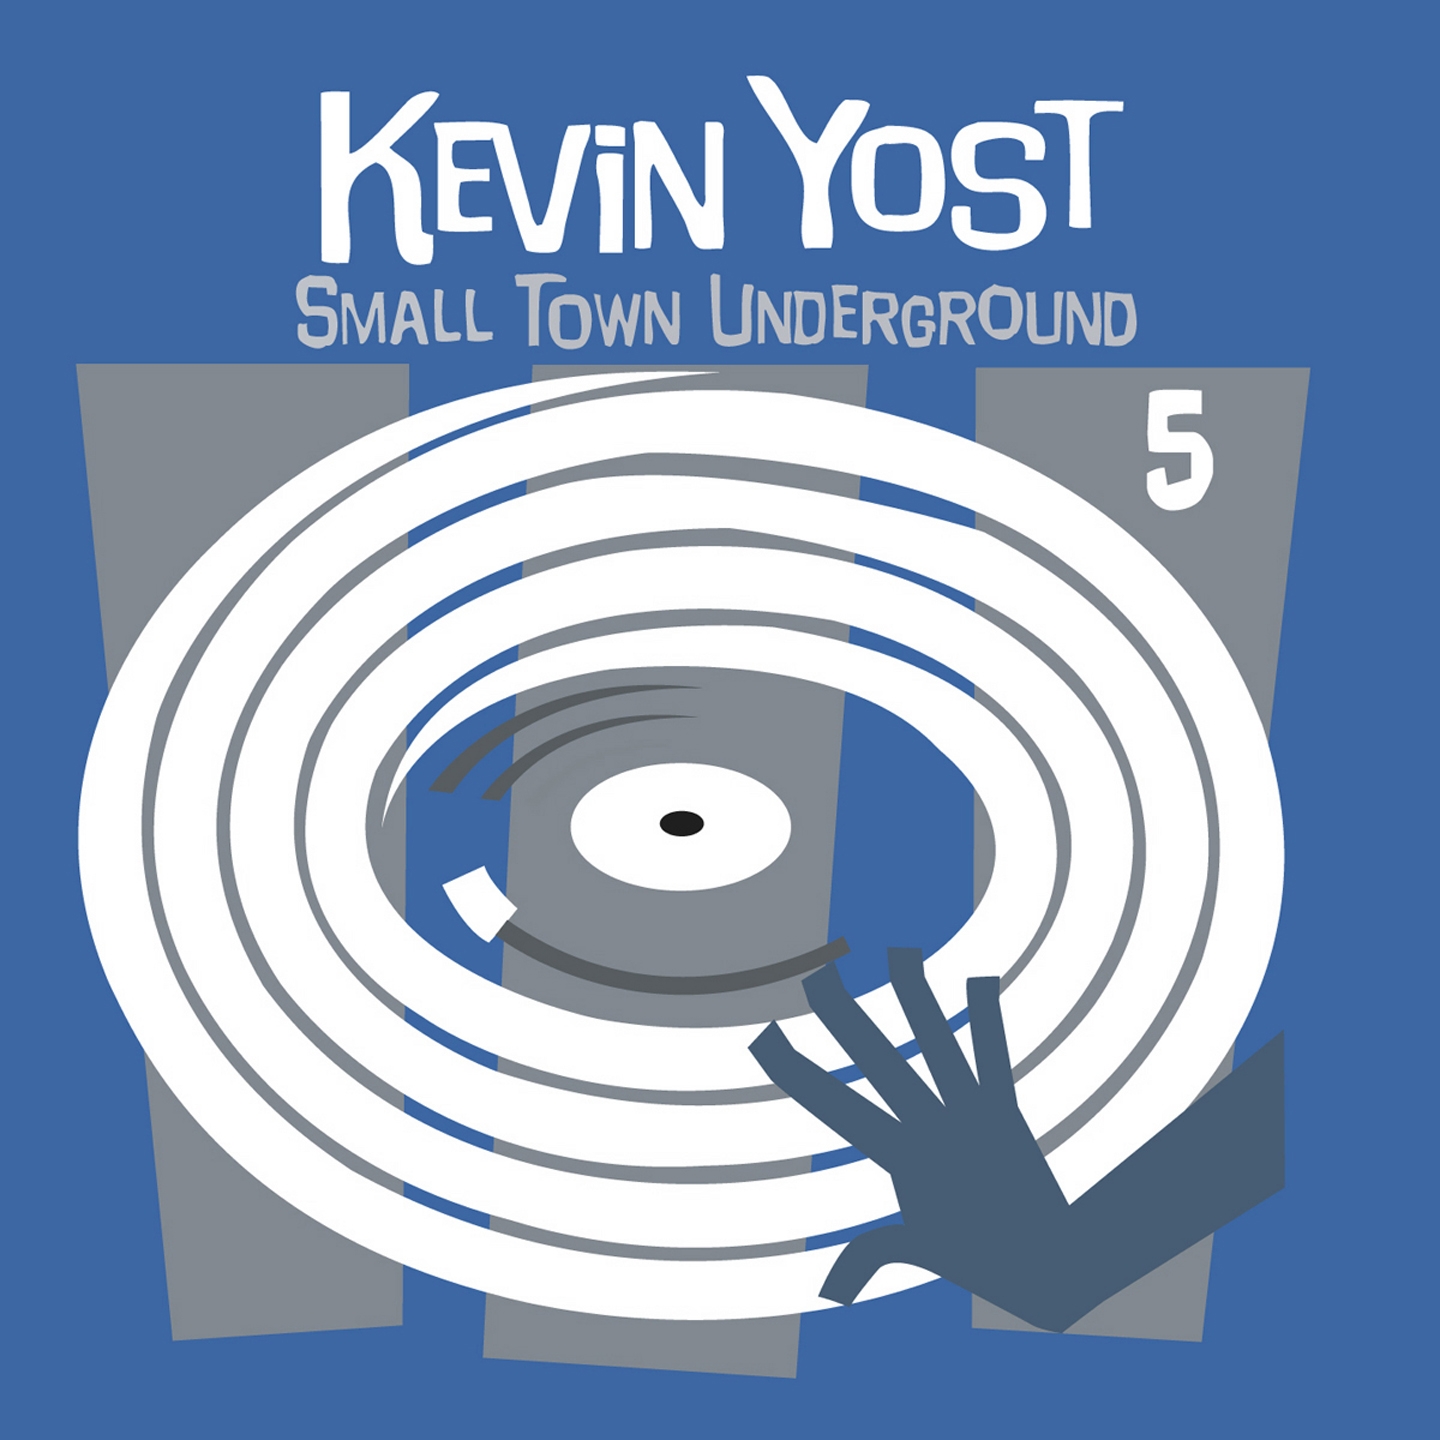 Small Town Underground, Vol. 5